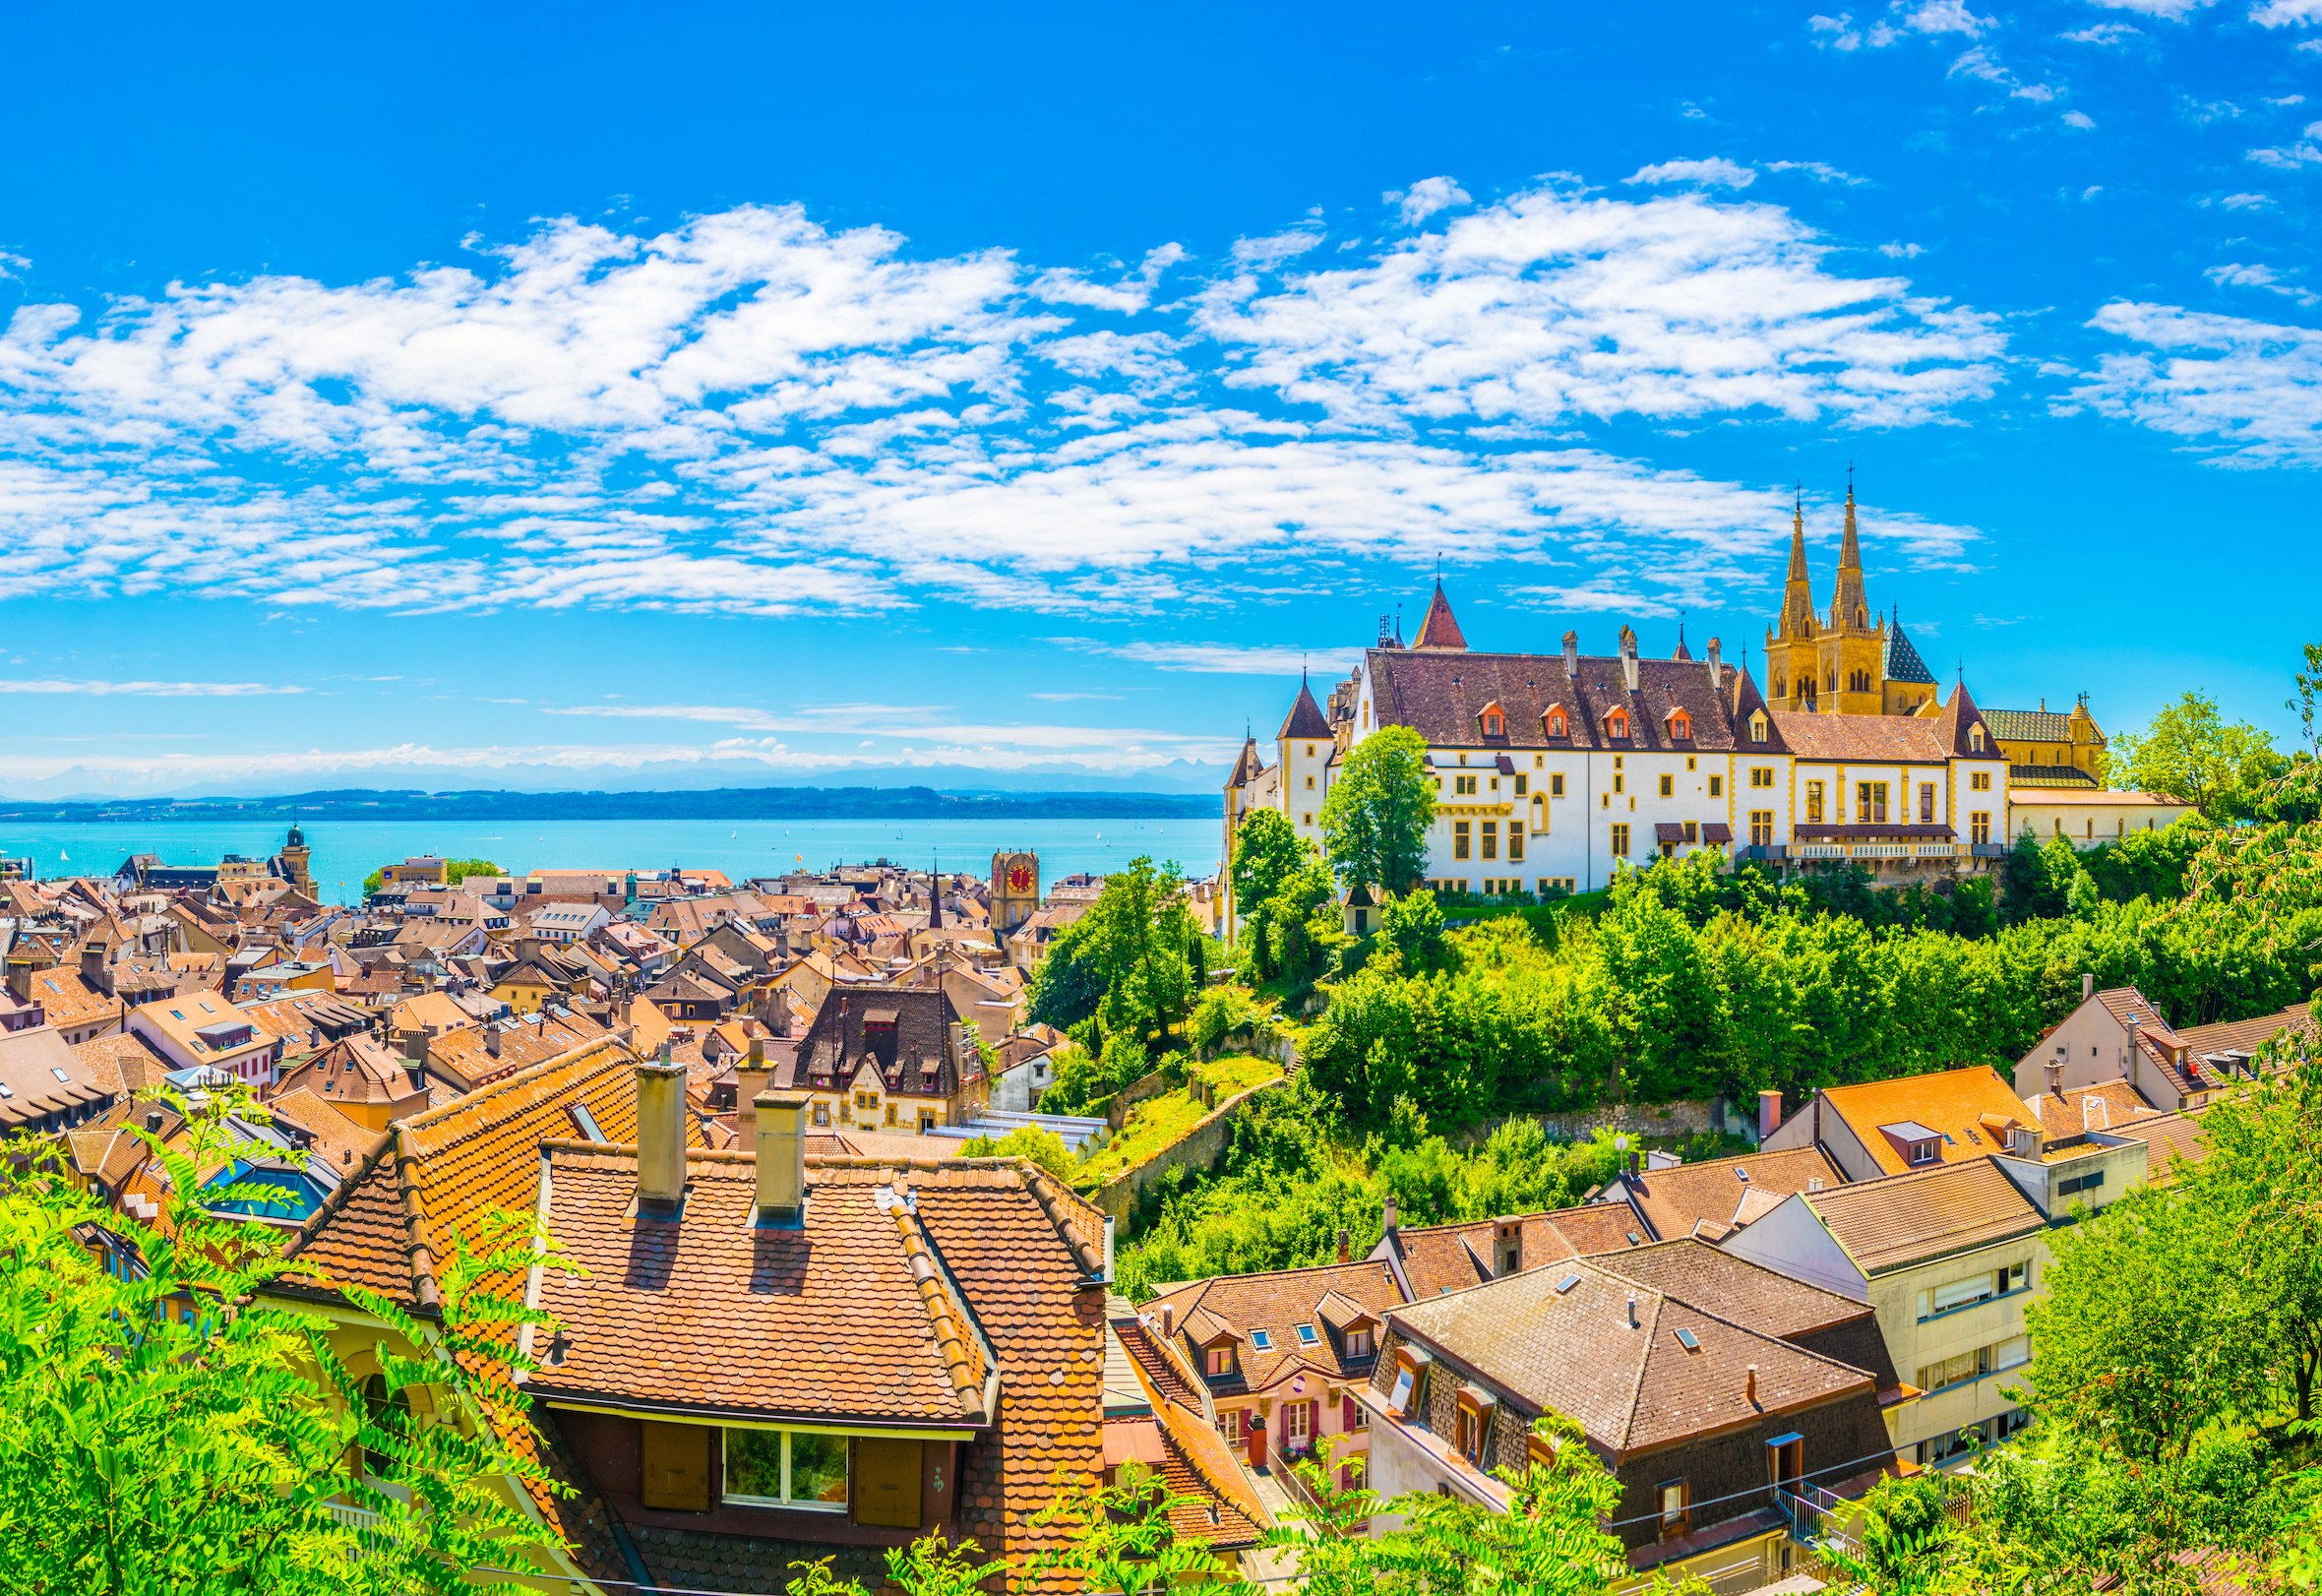 La région autrefois discrète de Neuchâtel s'est transformée en un centre florissant pour les start-ups de la fintech, gagnant une réputation de lieu de référence pour l'innovation suisse en matière de crypto-monnaies.